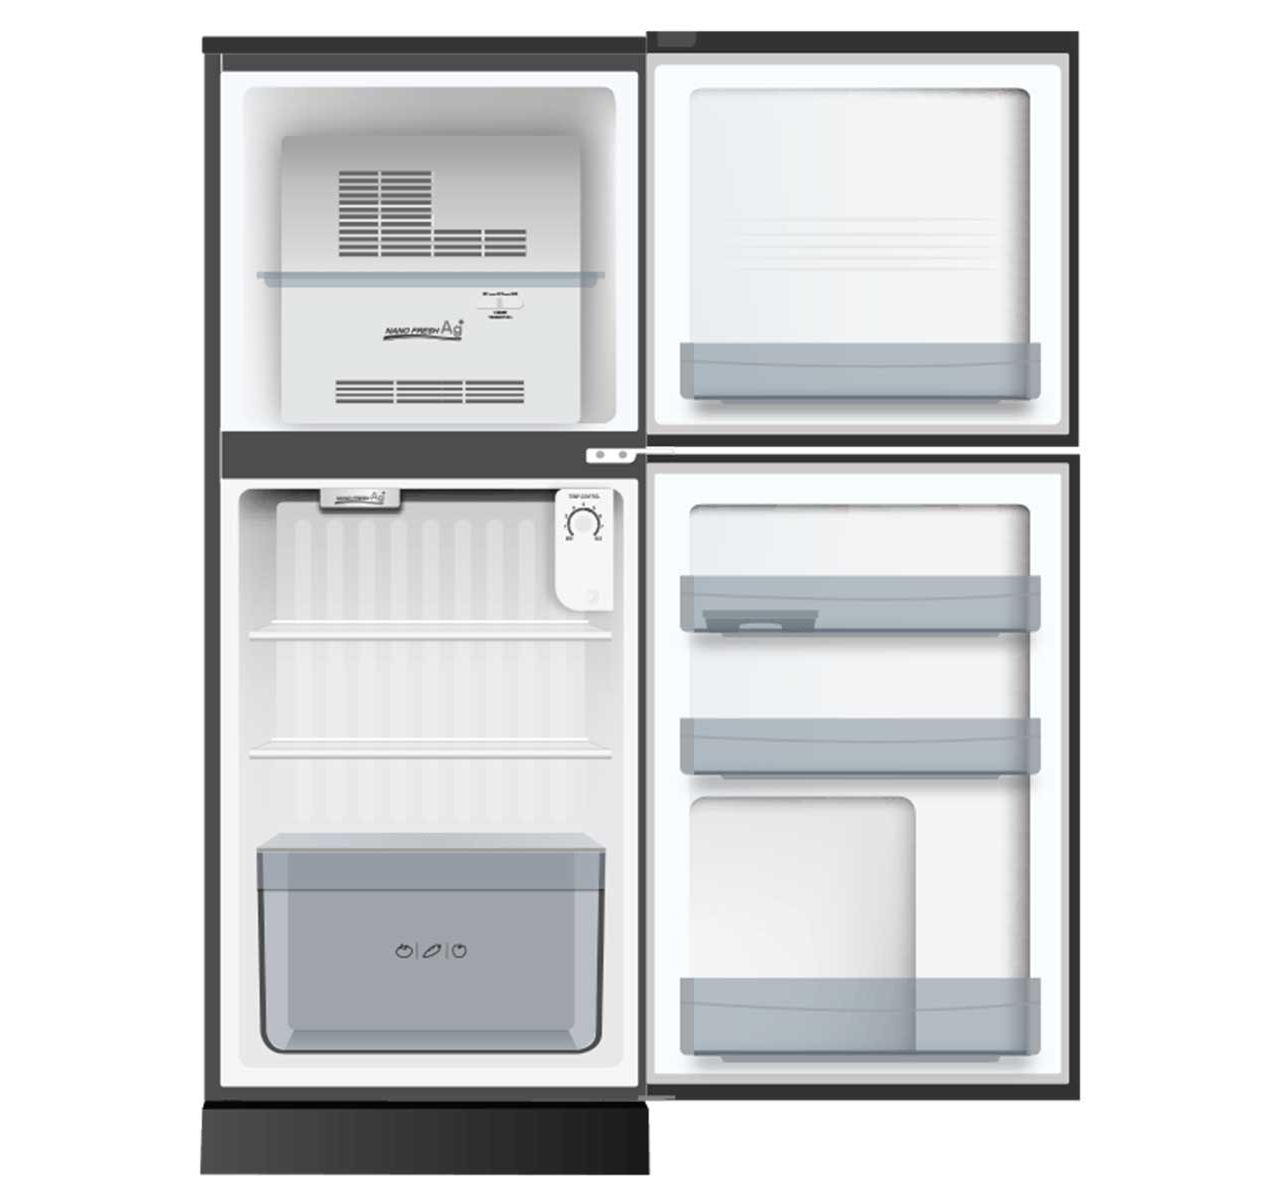 [GIAO HCM] [Trả góp 0%] Tủ lạnh Aqua 130 lít AQR-T150FA BS - Công nghệ làm lạnh đa chiều kháng...